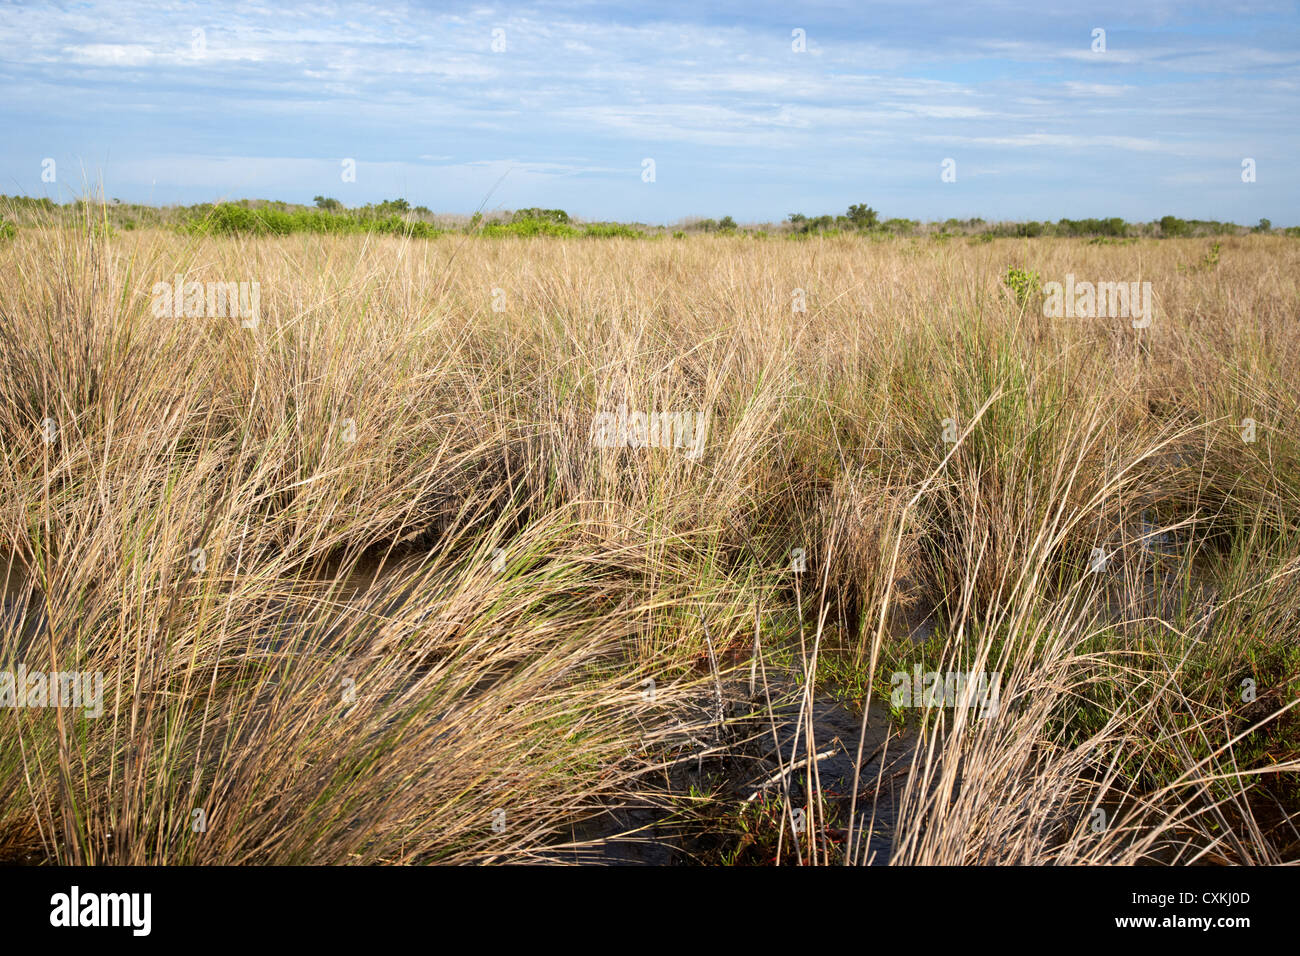 Les prairies inondées dans les Everglades de Floride usa Banque D'Images